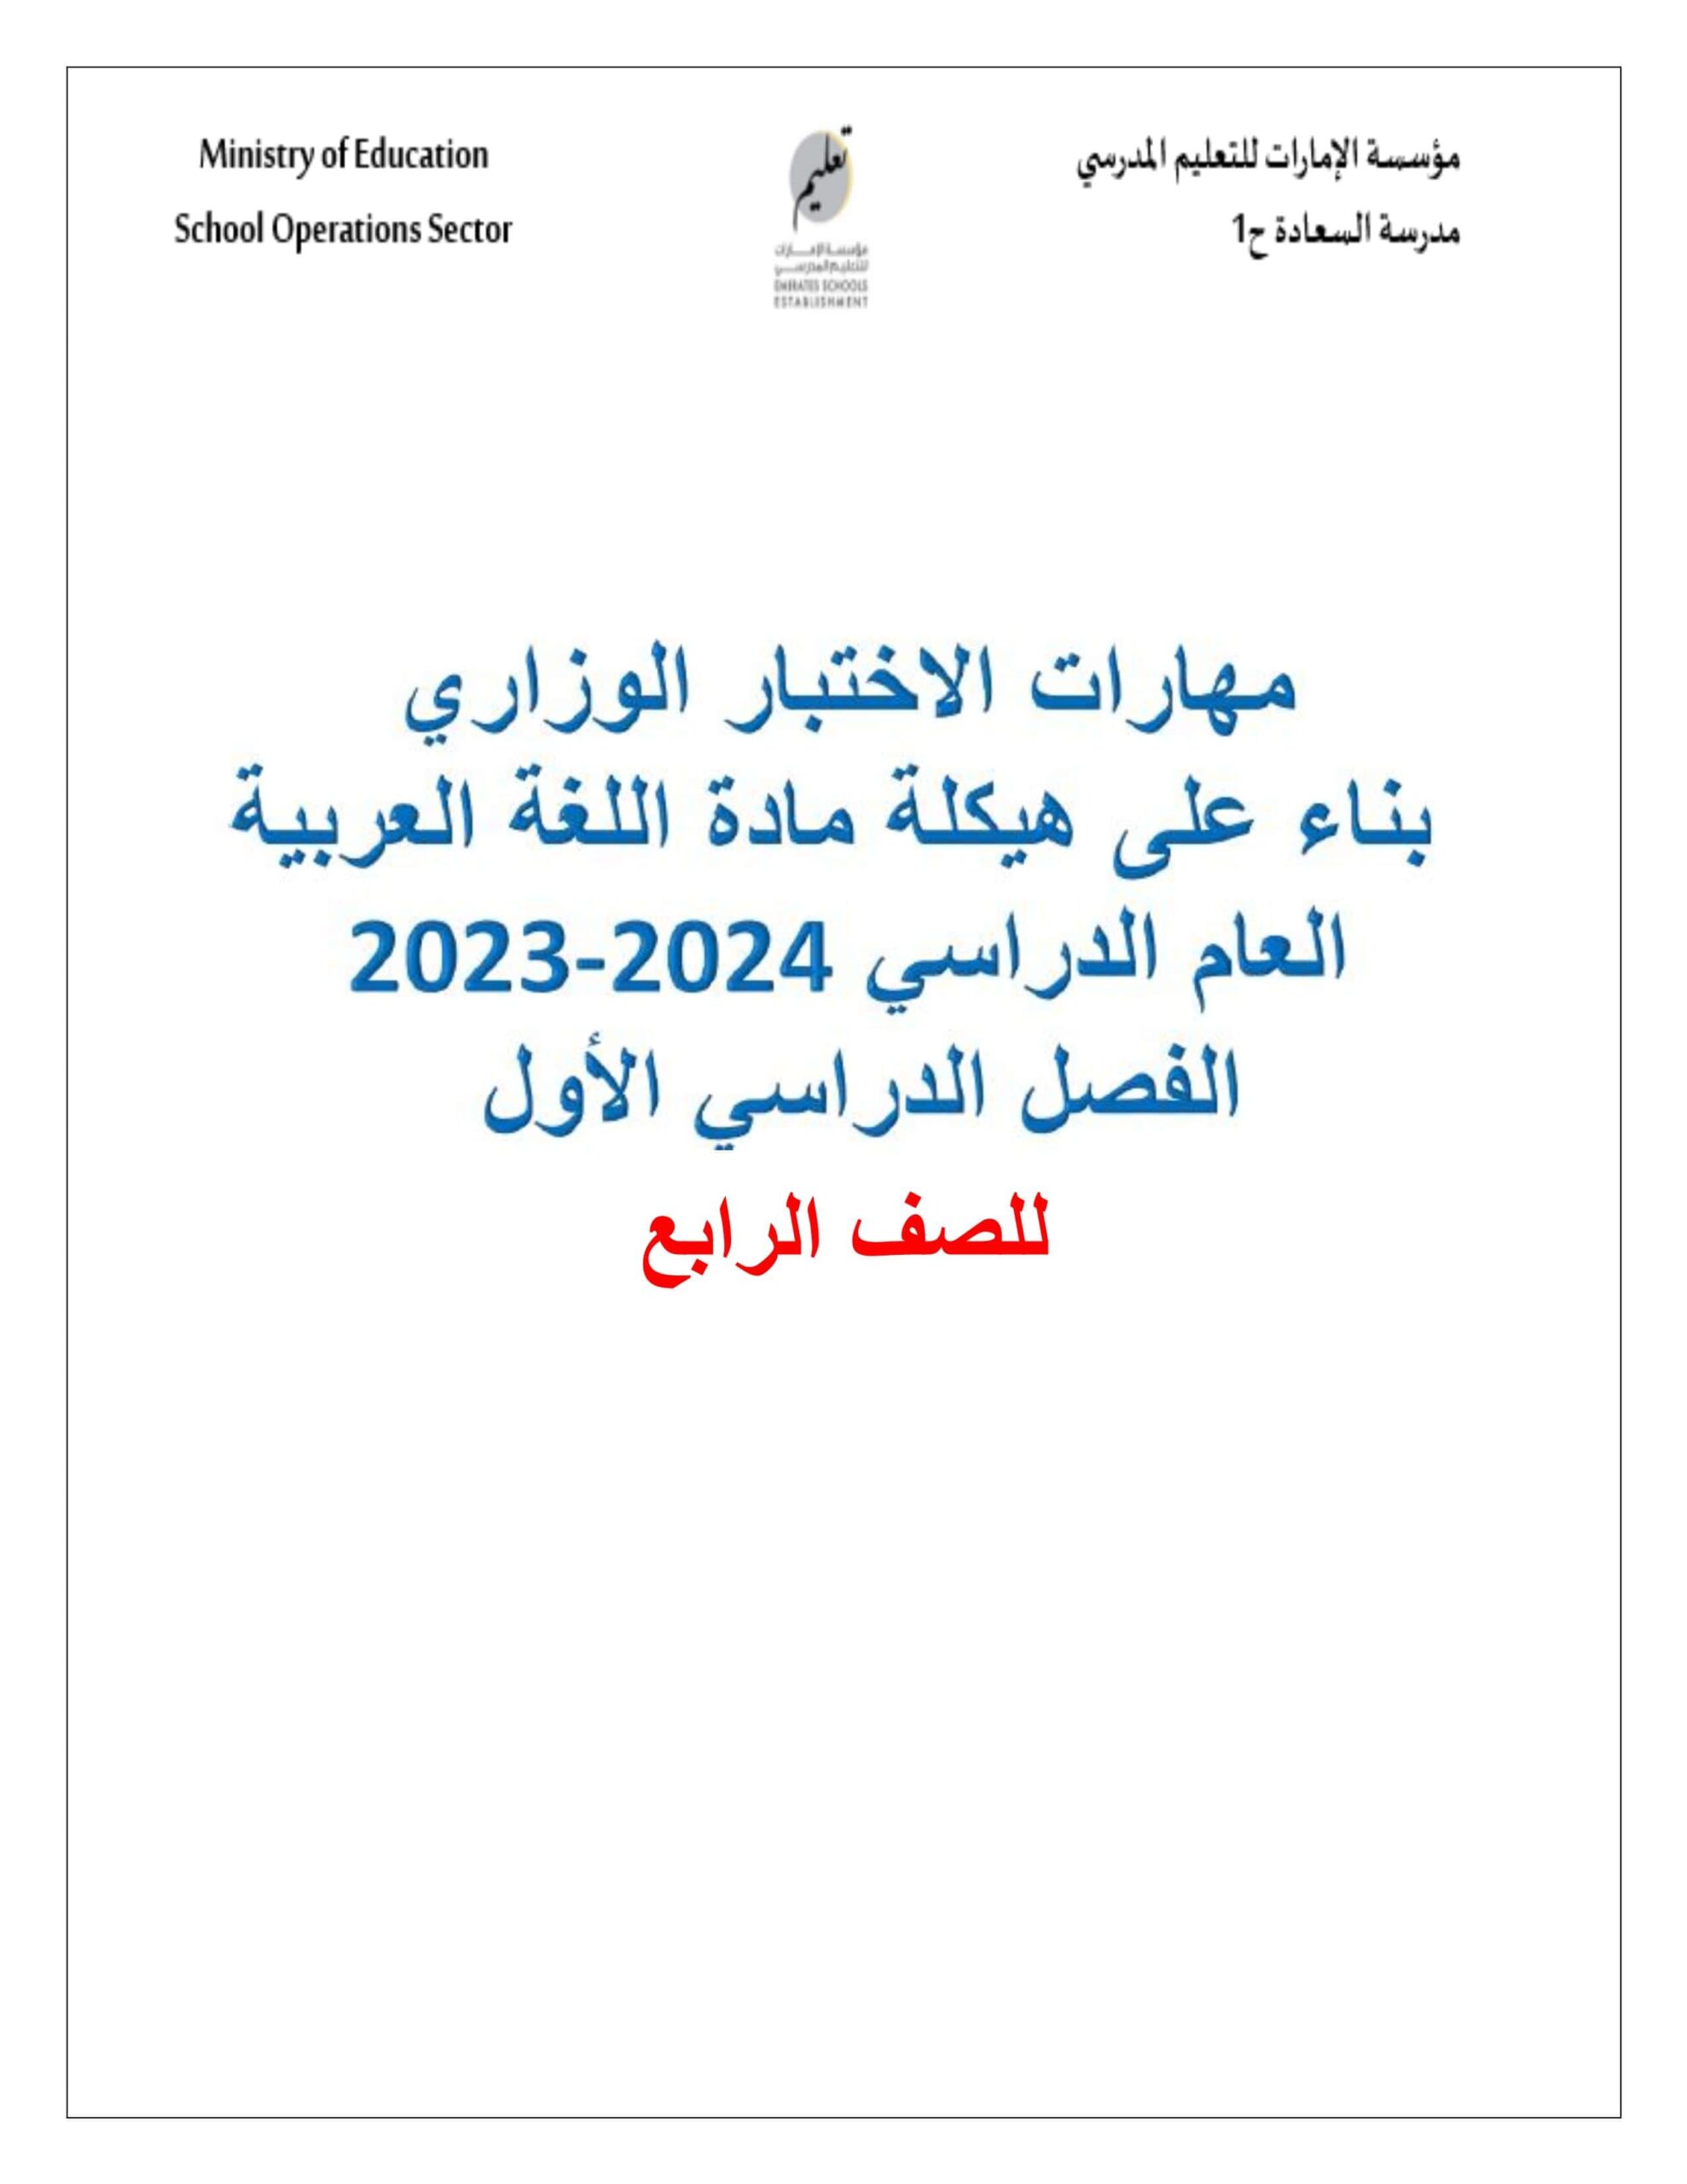 مهارات الاختبار الوزاري بناء على هيكلة اللغة العربية الصف الرابع 